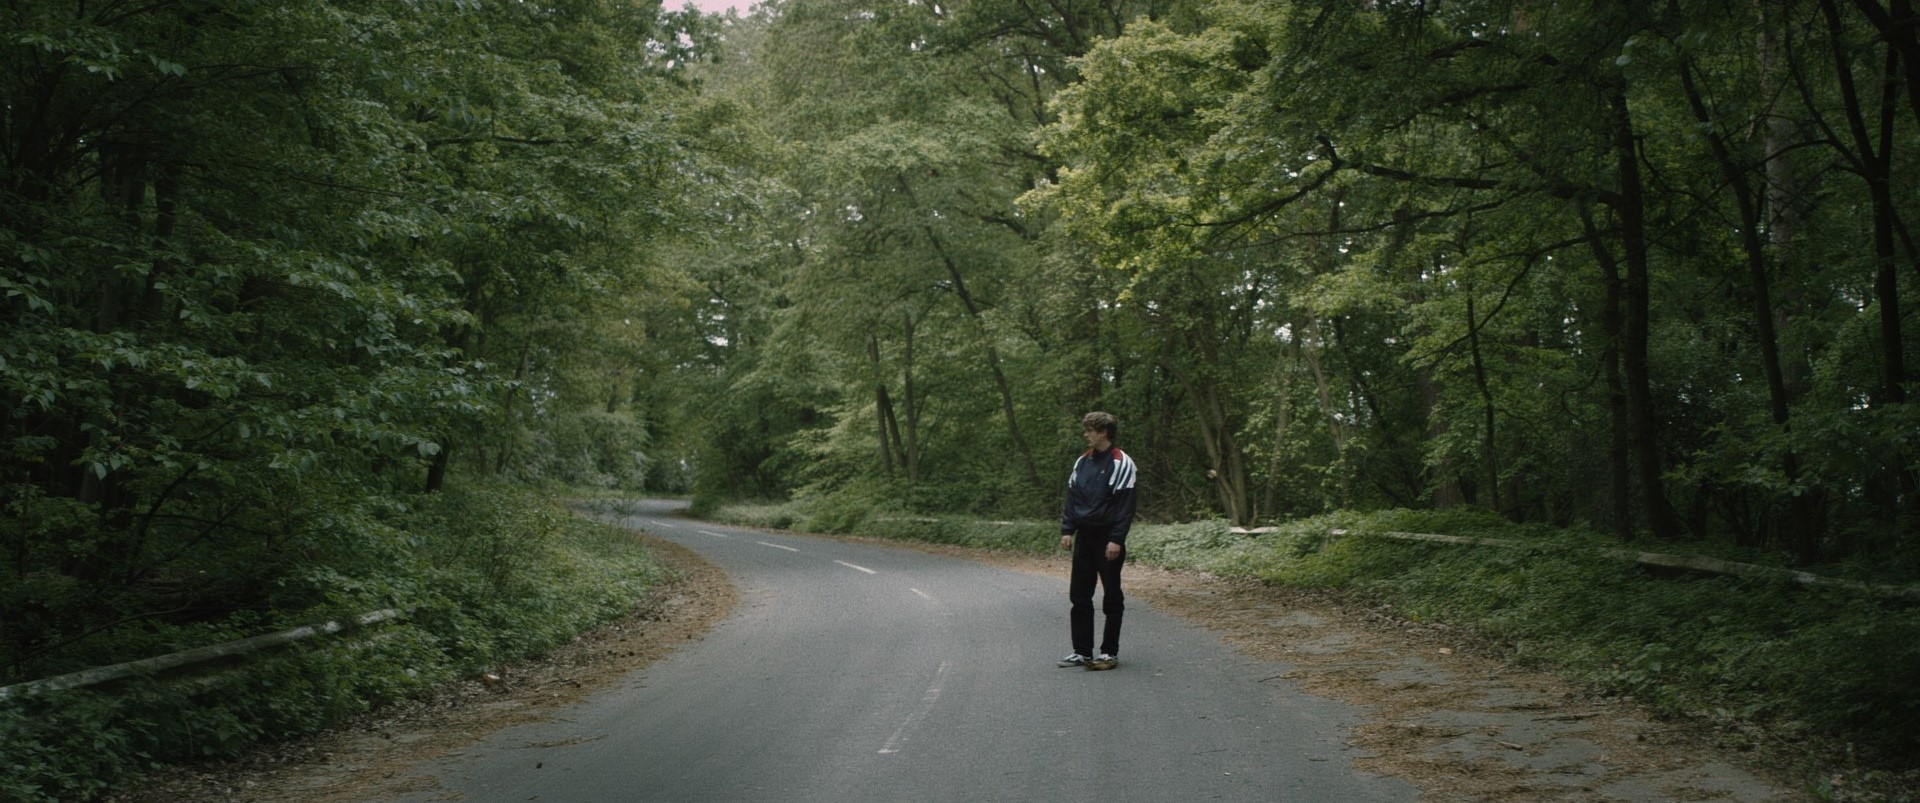 Erik steht alleine auf einer Straße die durch einen Wald führt